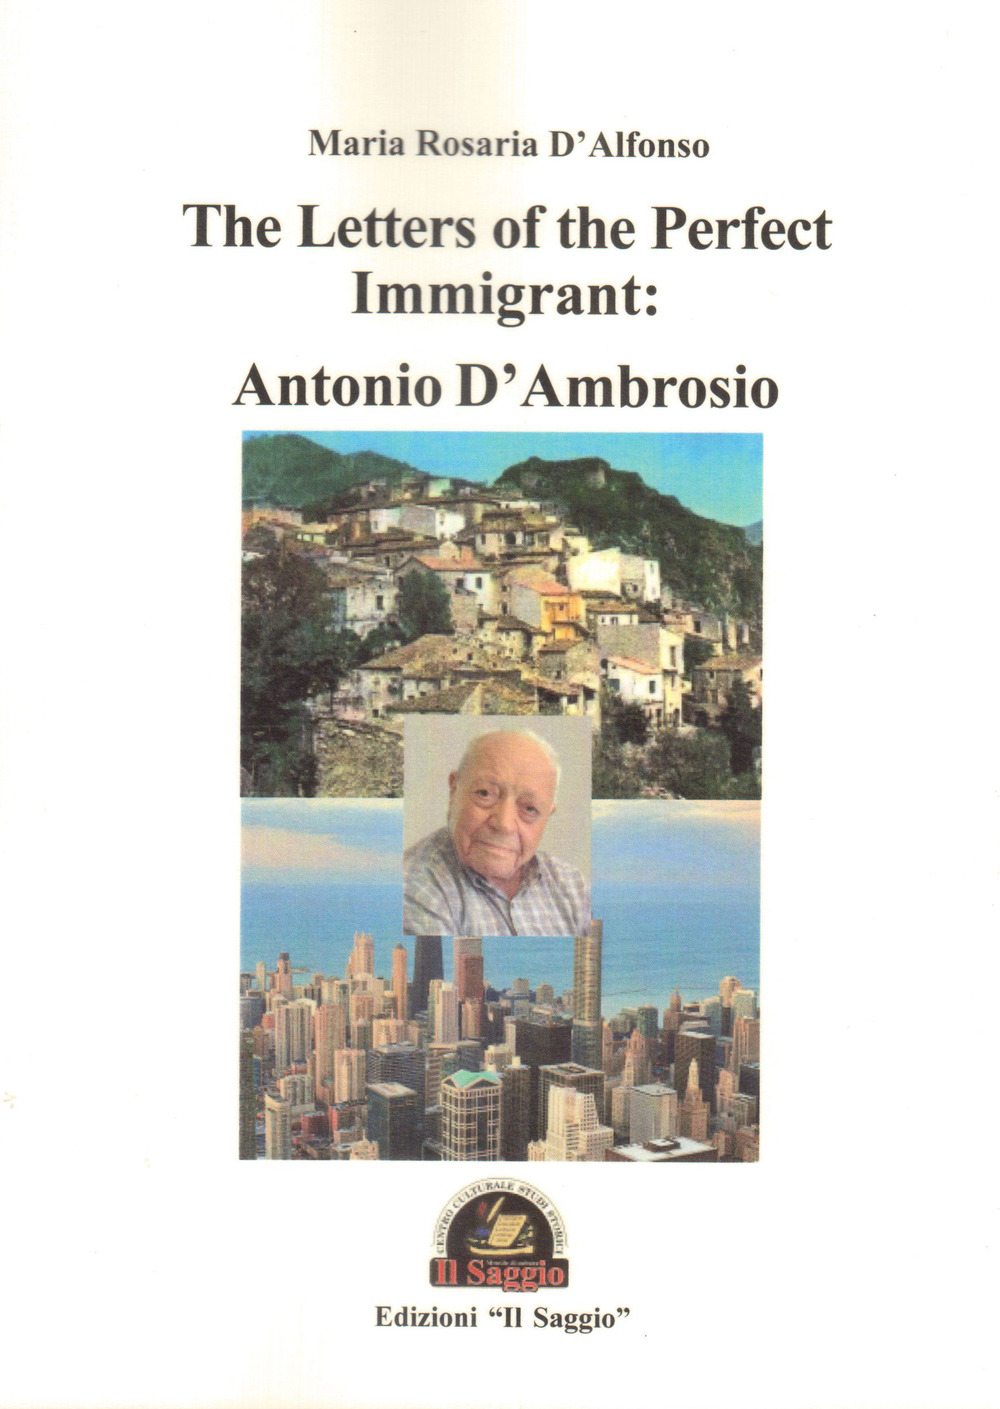 Libri D'Alfonso Maria Rosaria - The Letters Of The Perfect Immigrant: Antonio D'ambrosio NUOVO SIGILLATO, EDIZIONE DEL 01/01/2019 SUBITO DISPONIBILE